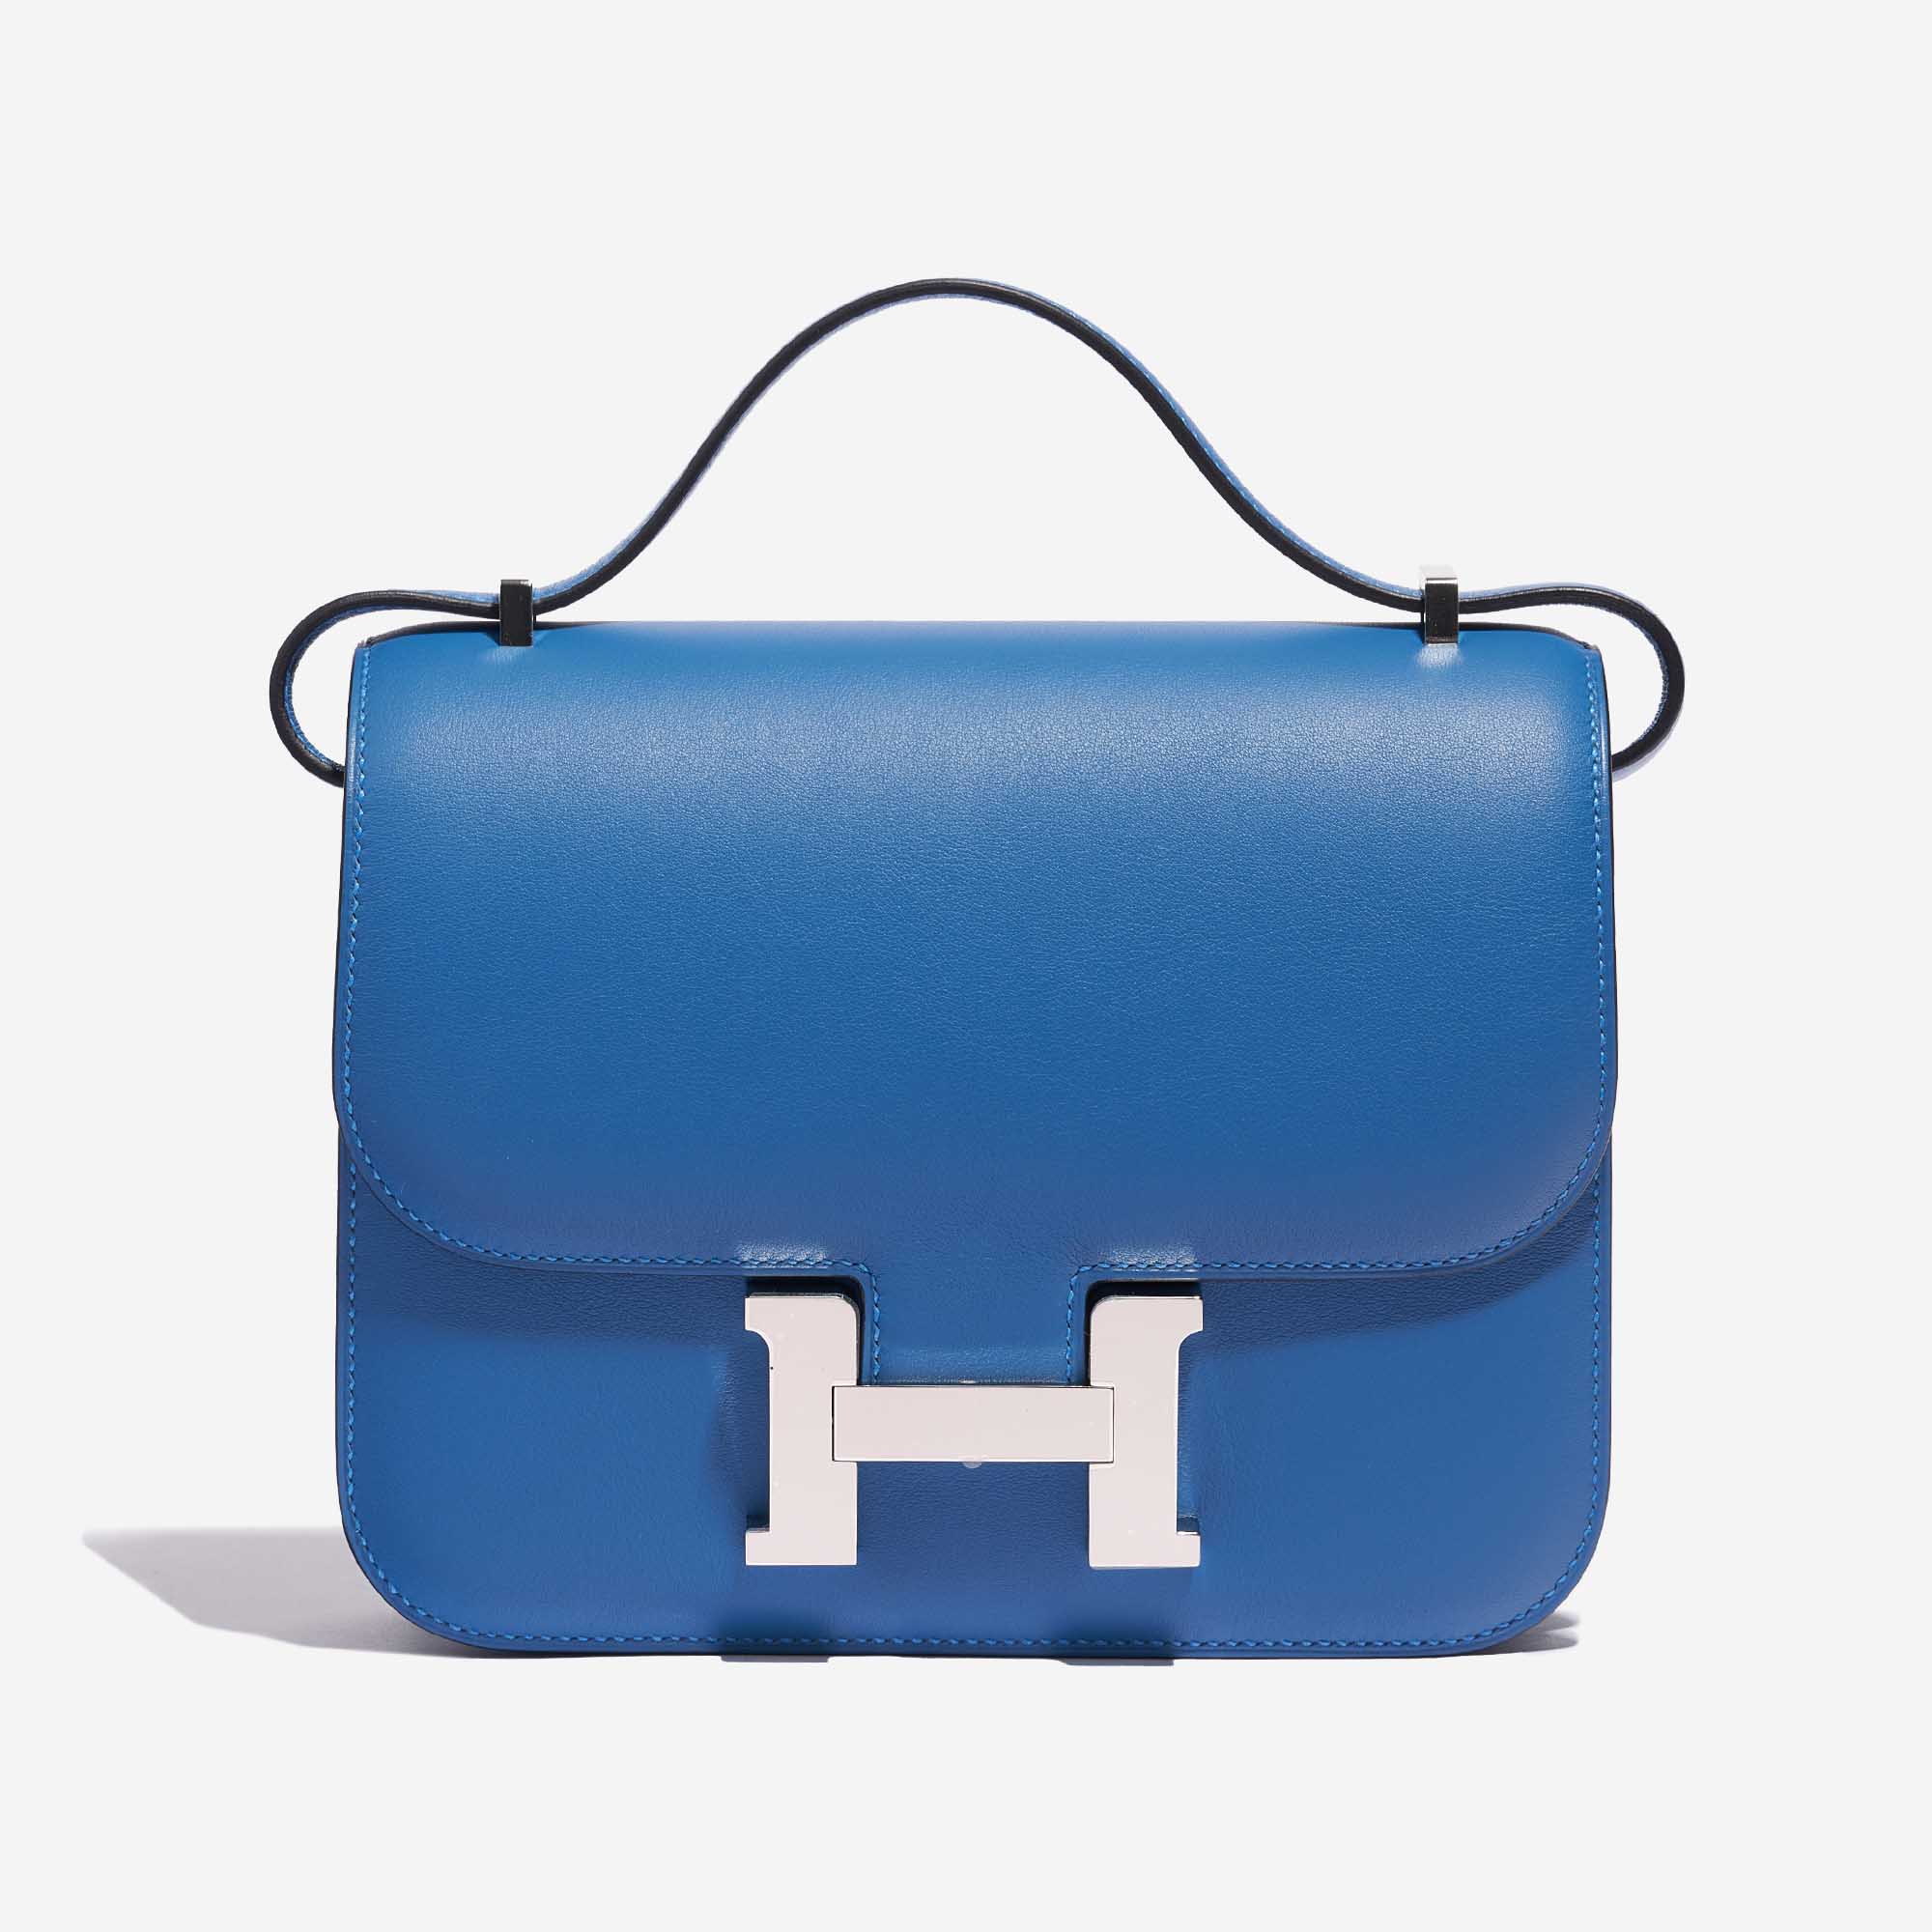 Sac Hermès d'occasion Constance 18 Swift Bleu Mykonos / Bleu Encre Bleu Front | Vendez votre sac de créateur sur Saclab.com